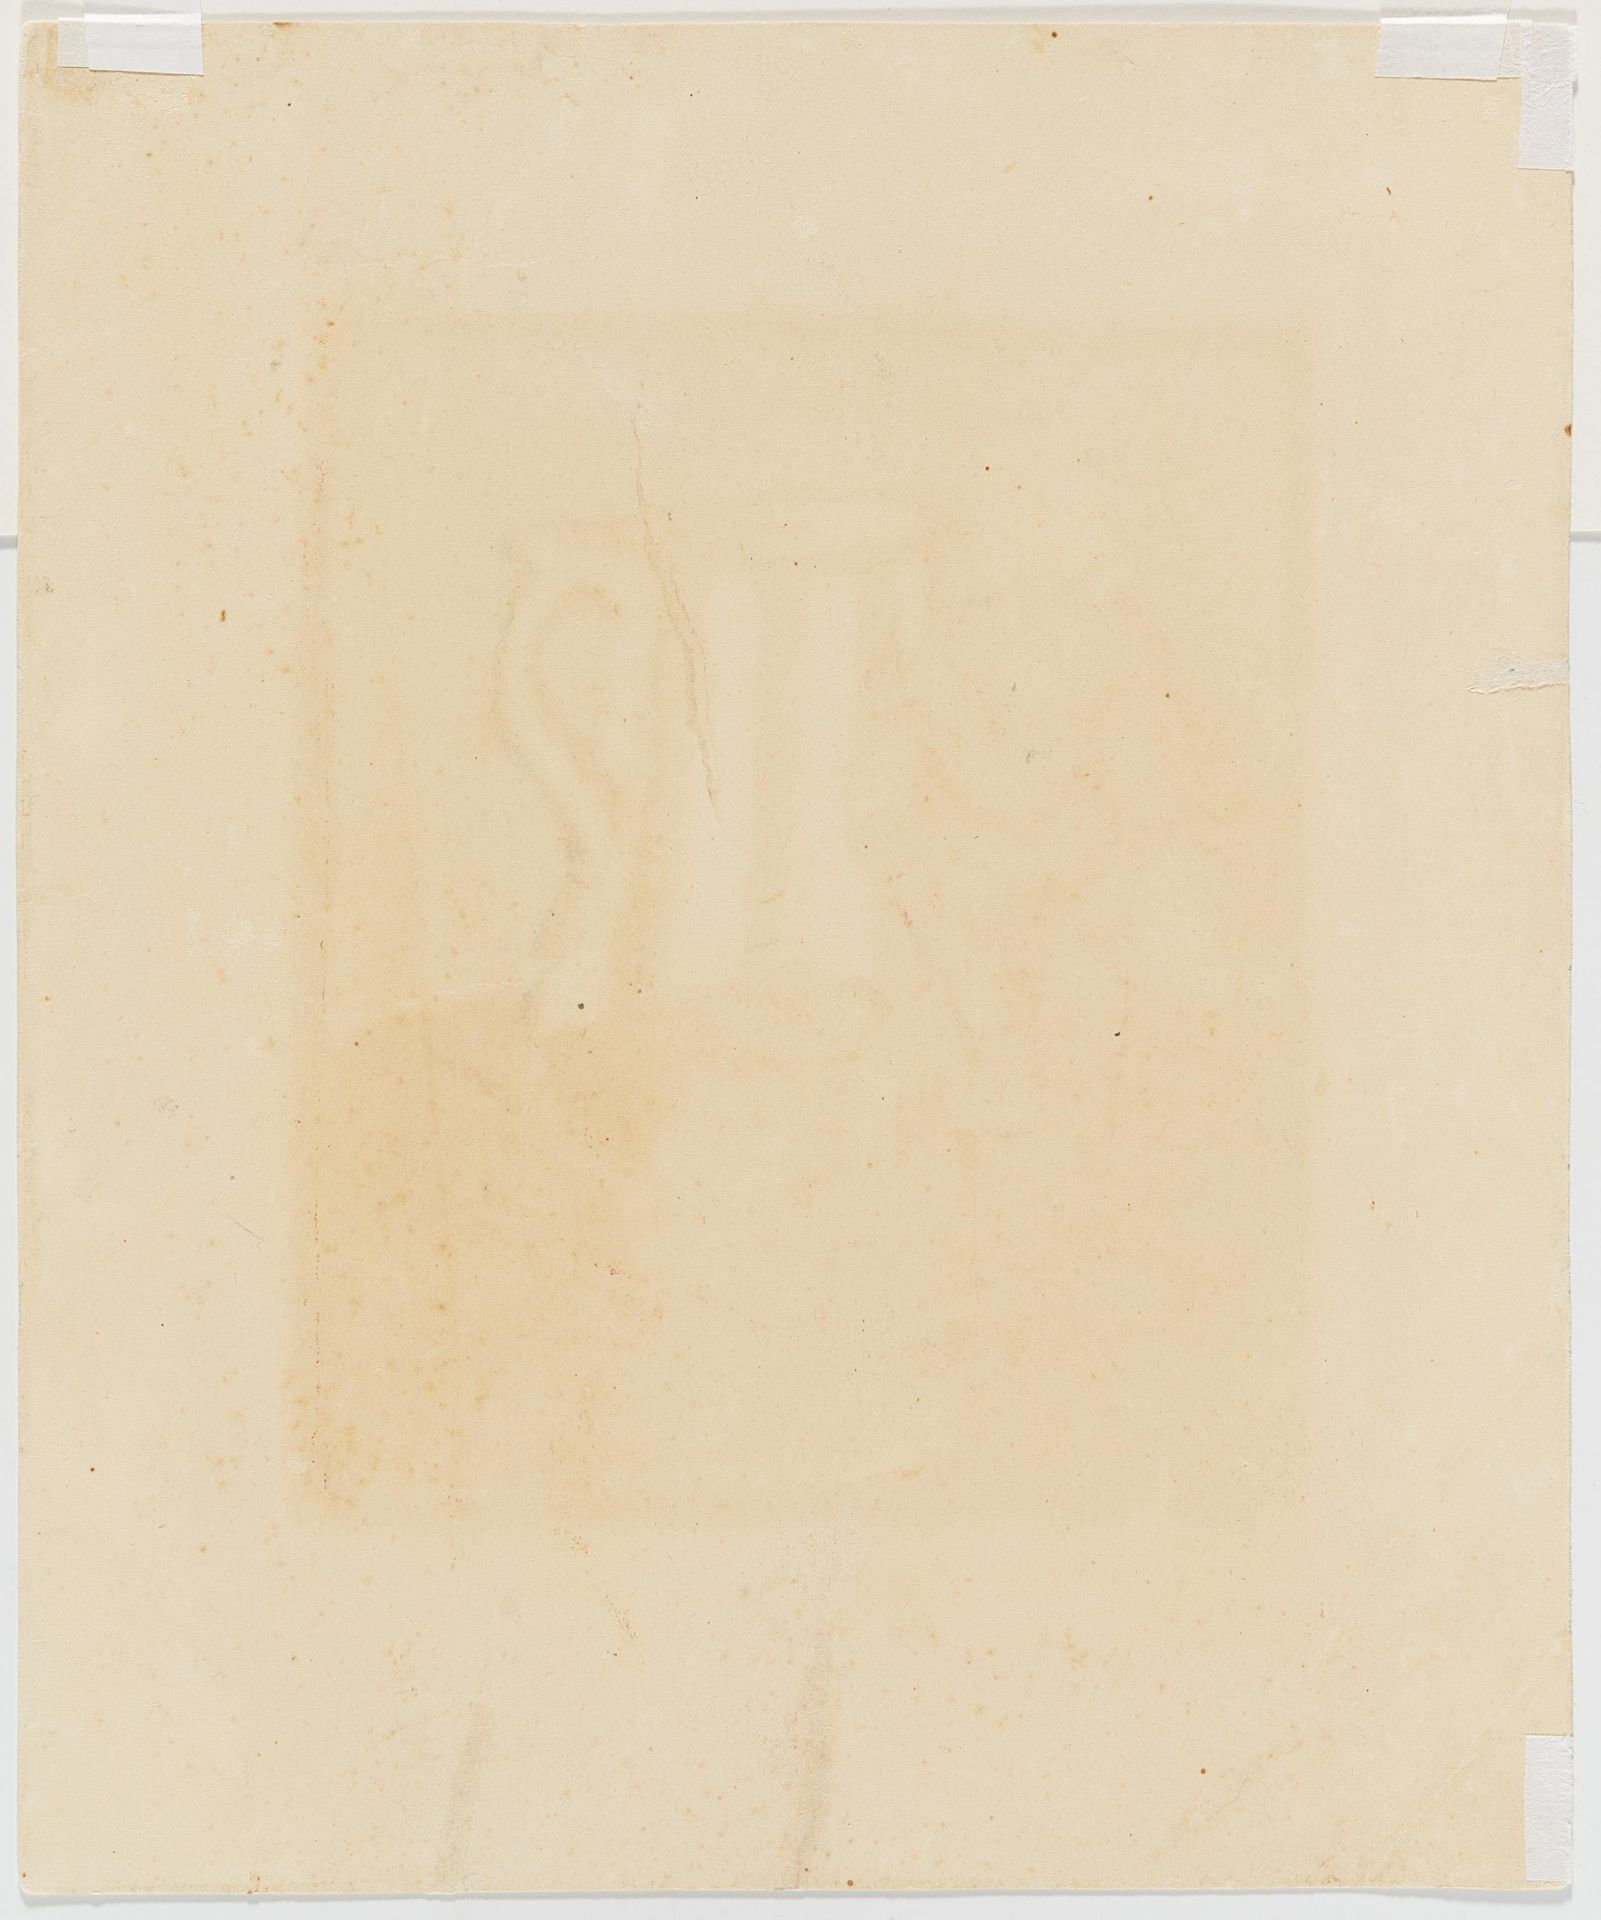 Ernst Ludwig Kirchner: Stillleben - Image 3 of 4